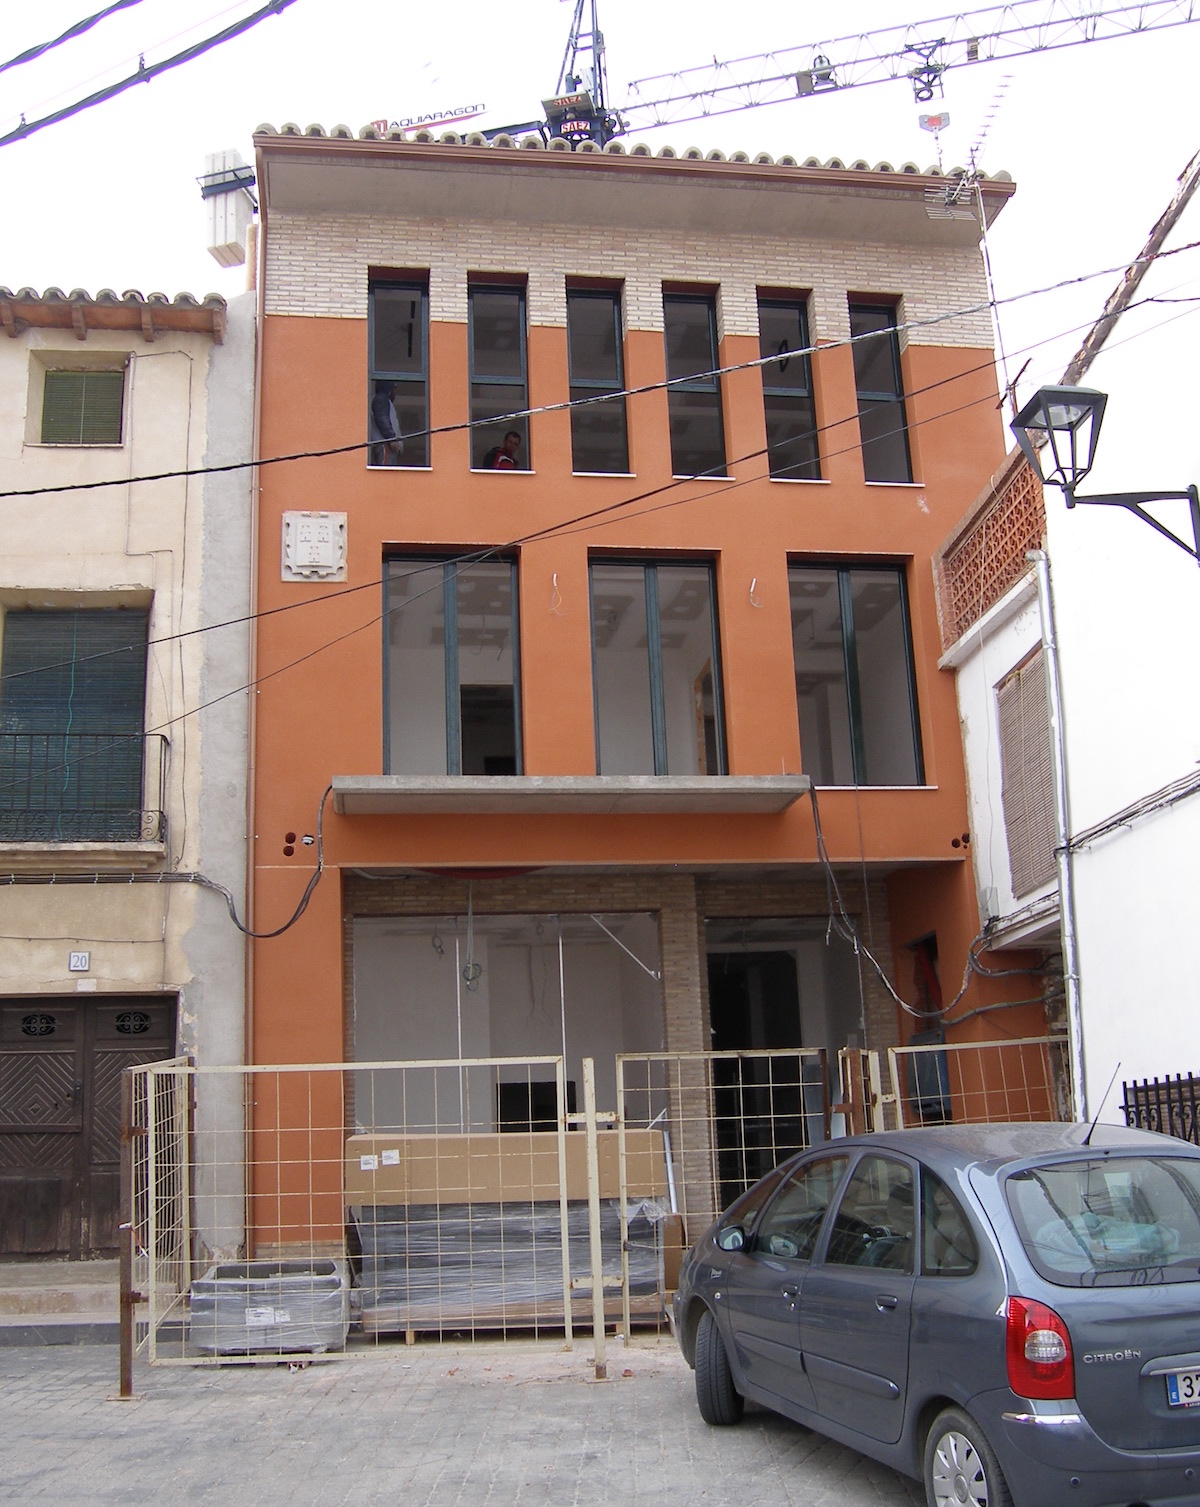 Construcción nuevo ayuntamiento en Torrellas (Zaragoza)